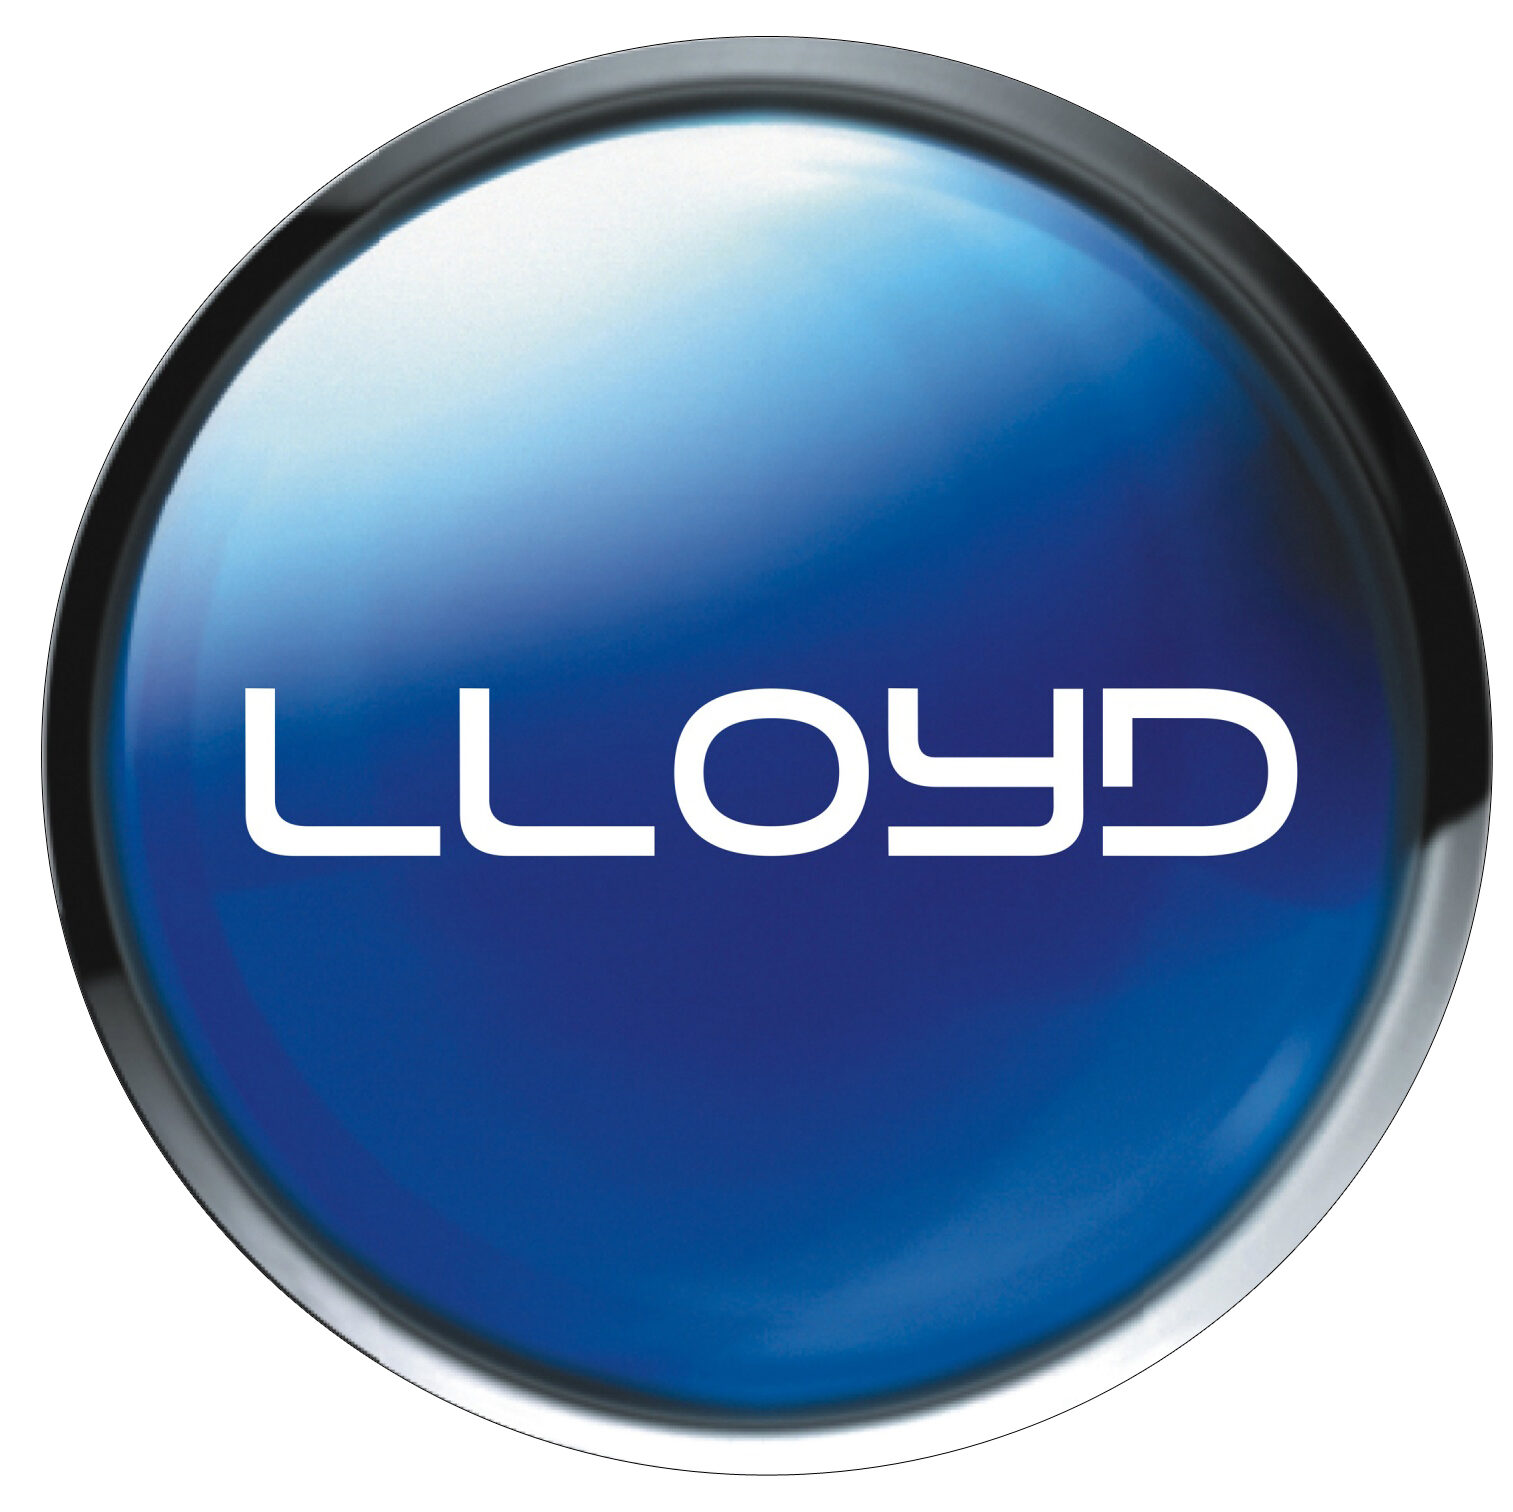 LLOYD washing machines